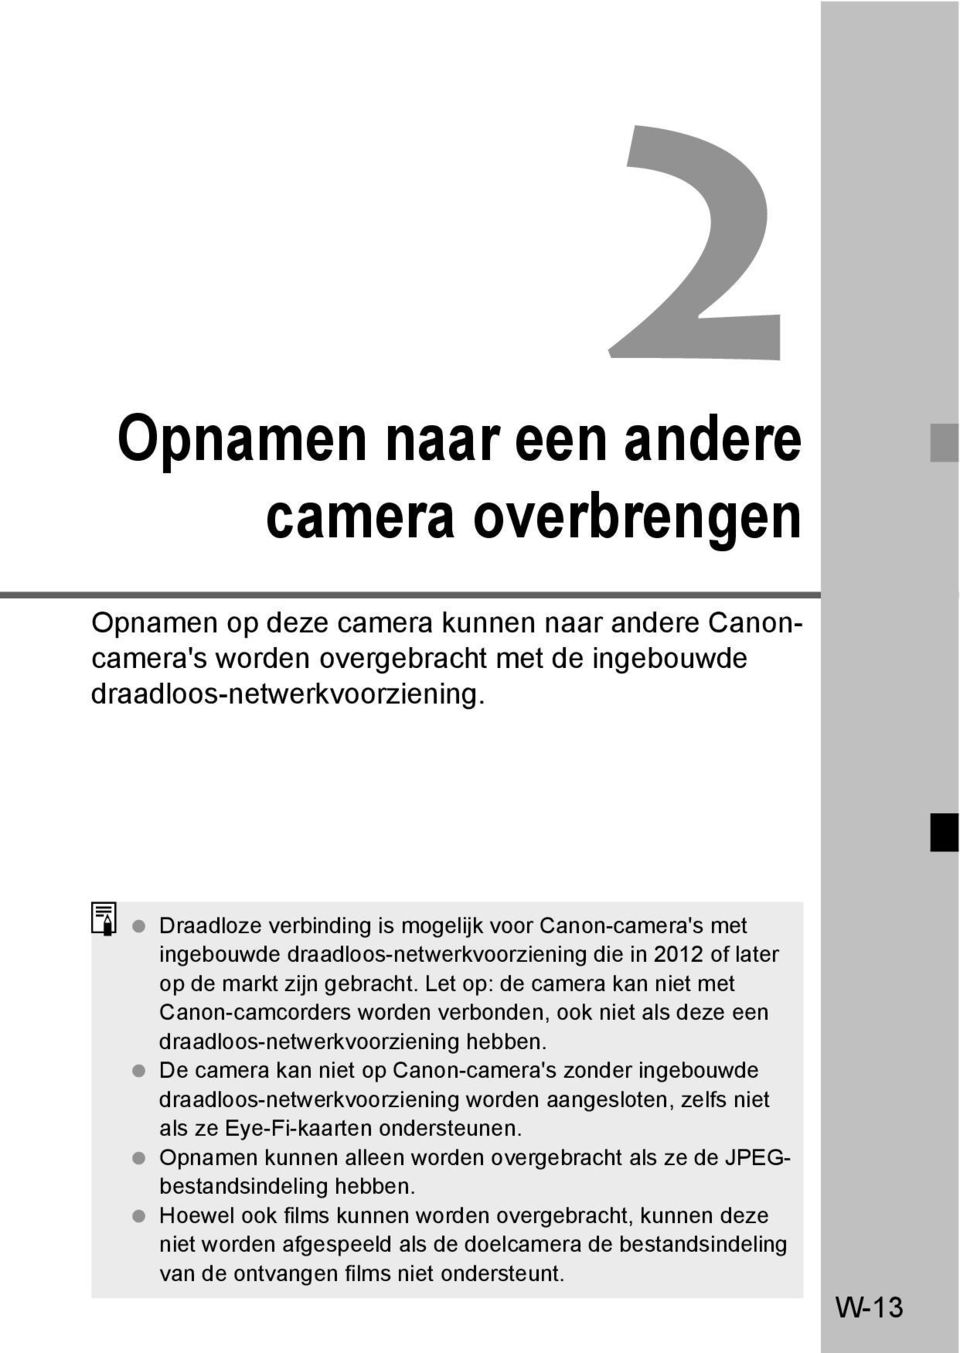 Let op: de camera kan niet met Canon-camcorders worden verbonden, ook niet als deze een draadloos-netwerkvoorziening hebben.